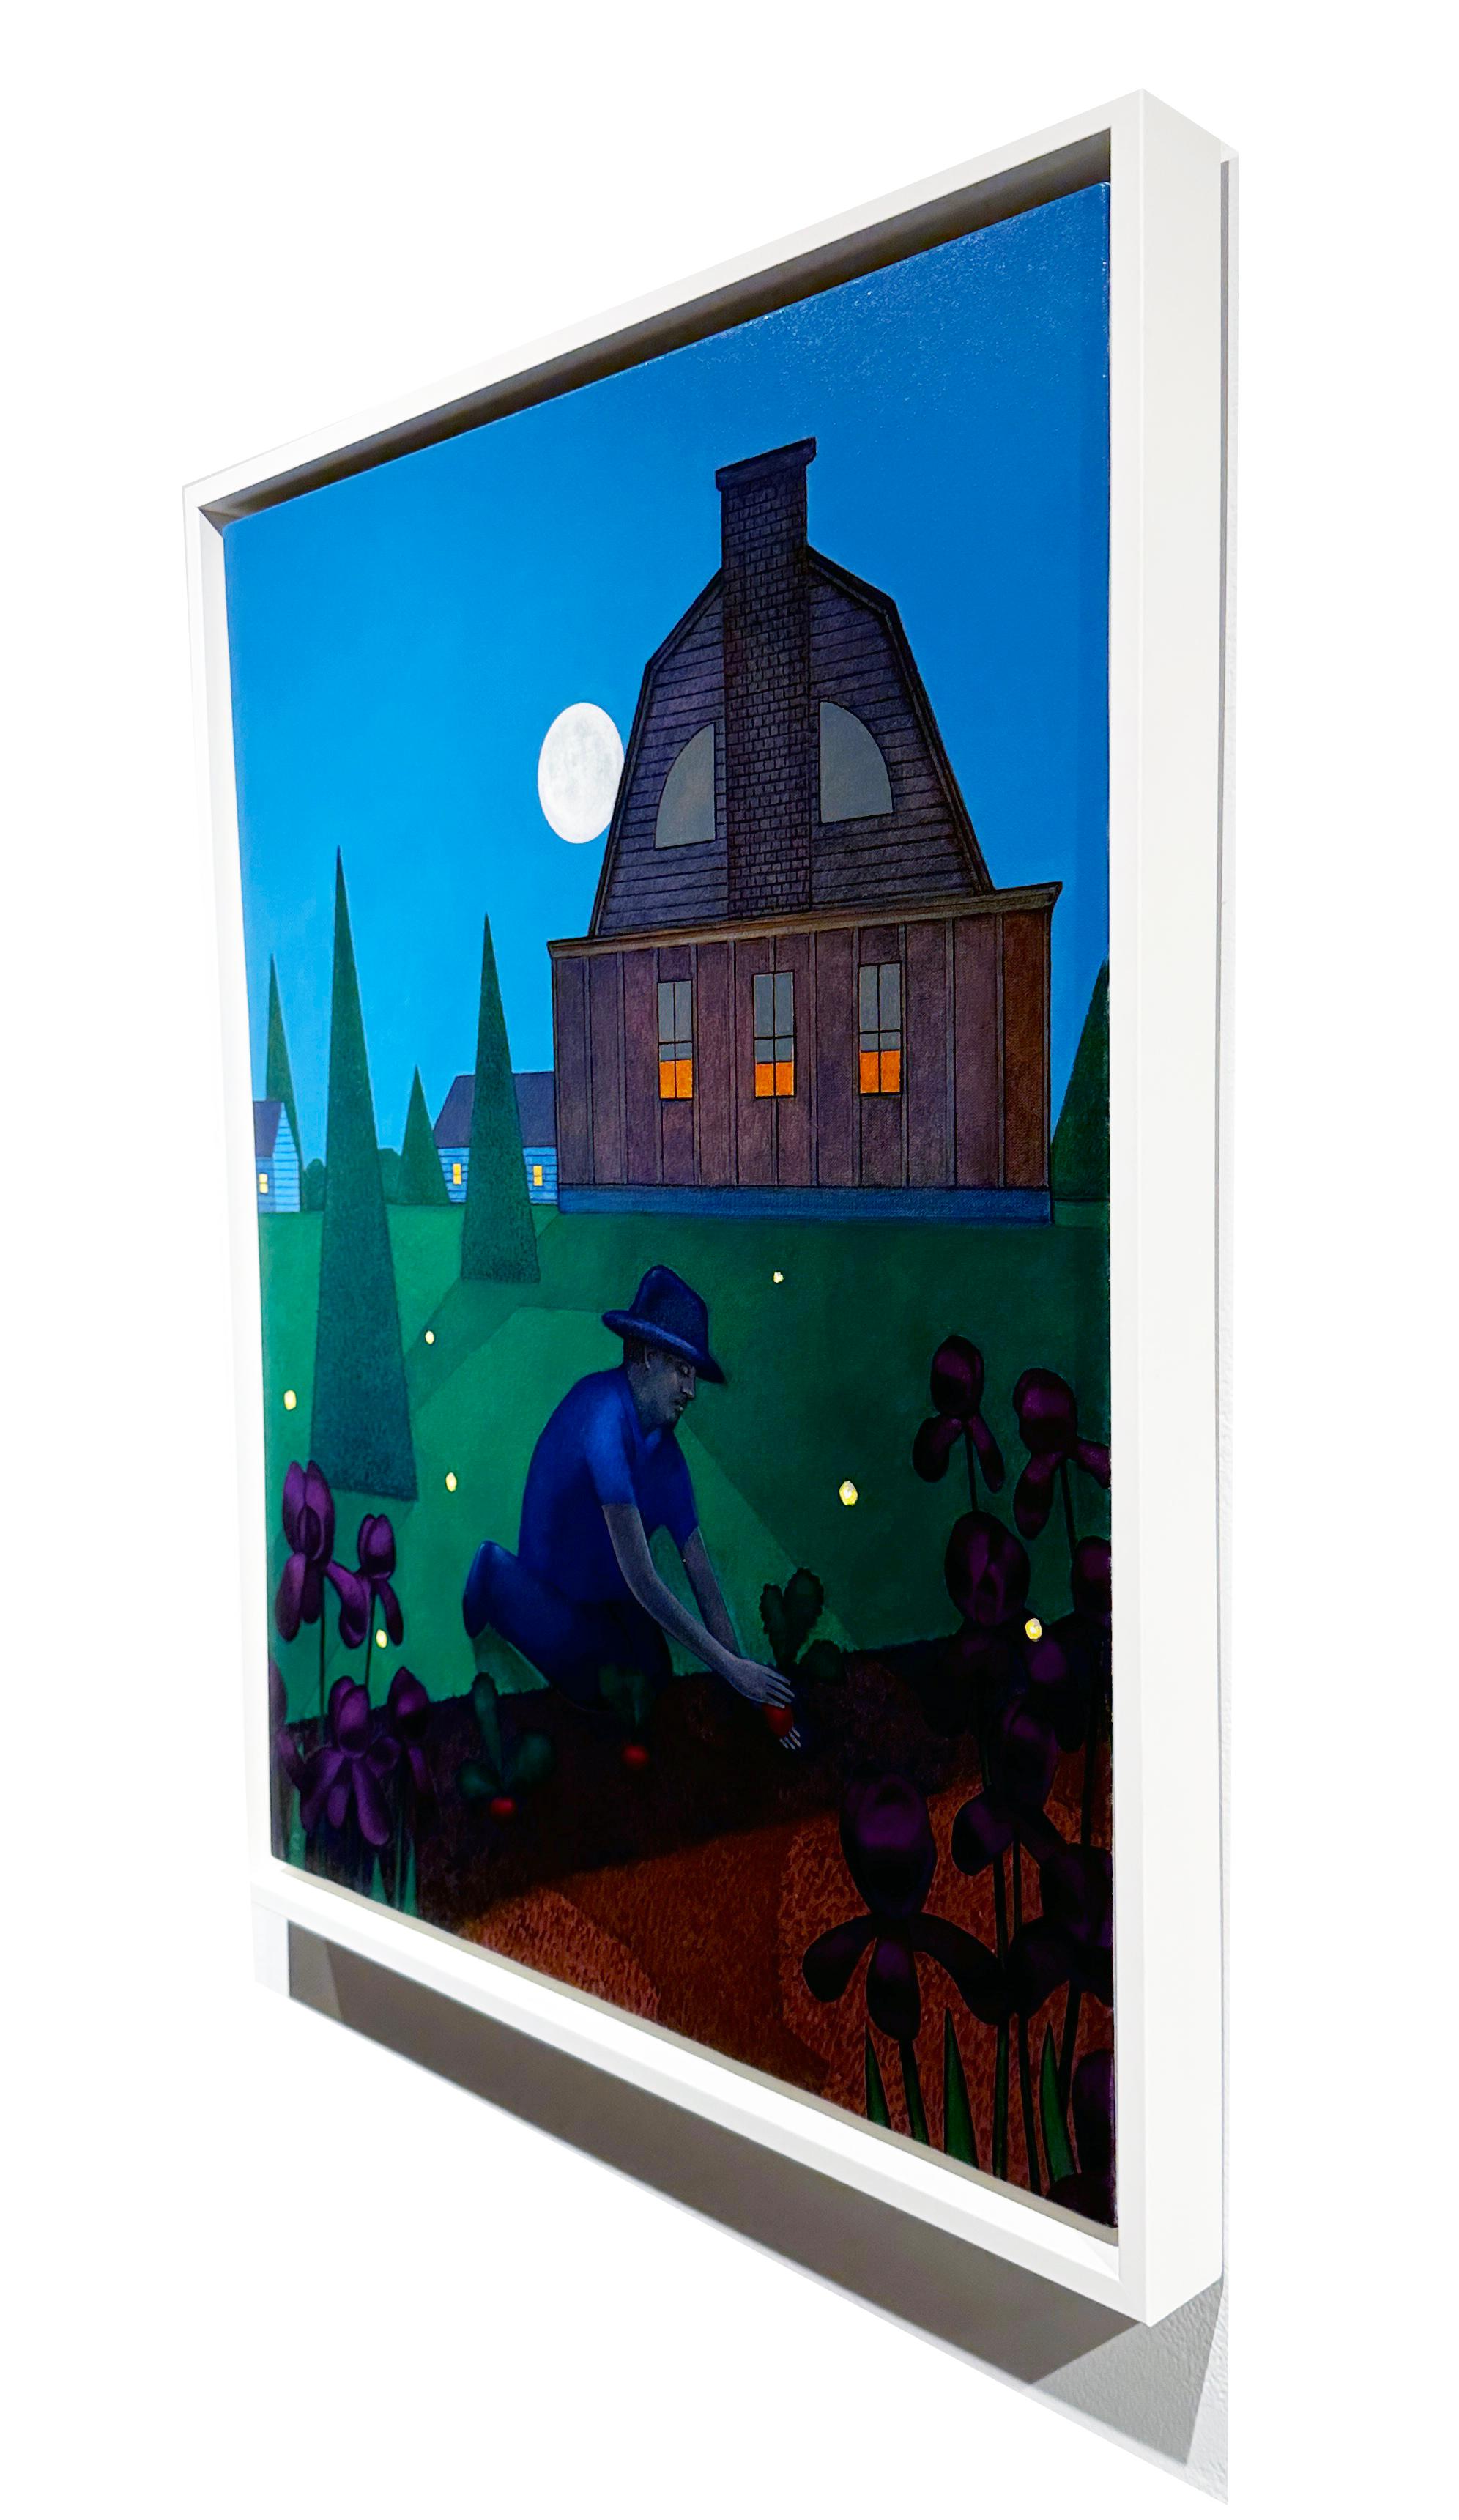 Der Vollmond beleuchtet die Landschaft gerade so weit, dass der Gärtner in diesem illustrativen Gemälde von John Hrehov seine Nachtschattenpflanzen pflegen kann.  Glühwürmchen zieren die Szene und tragen zur Verspieltheit des Bildes bei.  Dieses